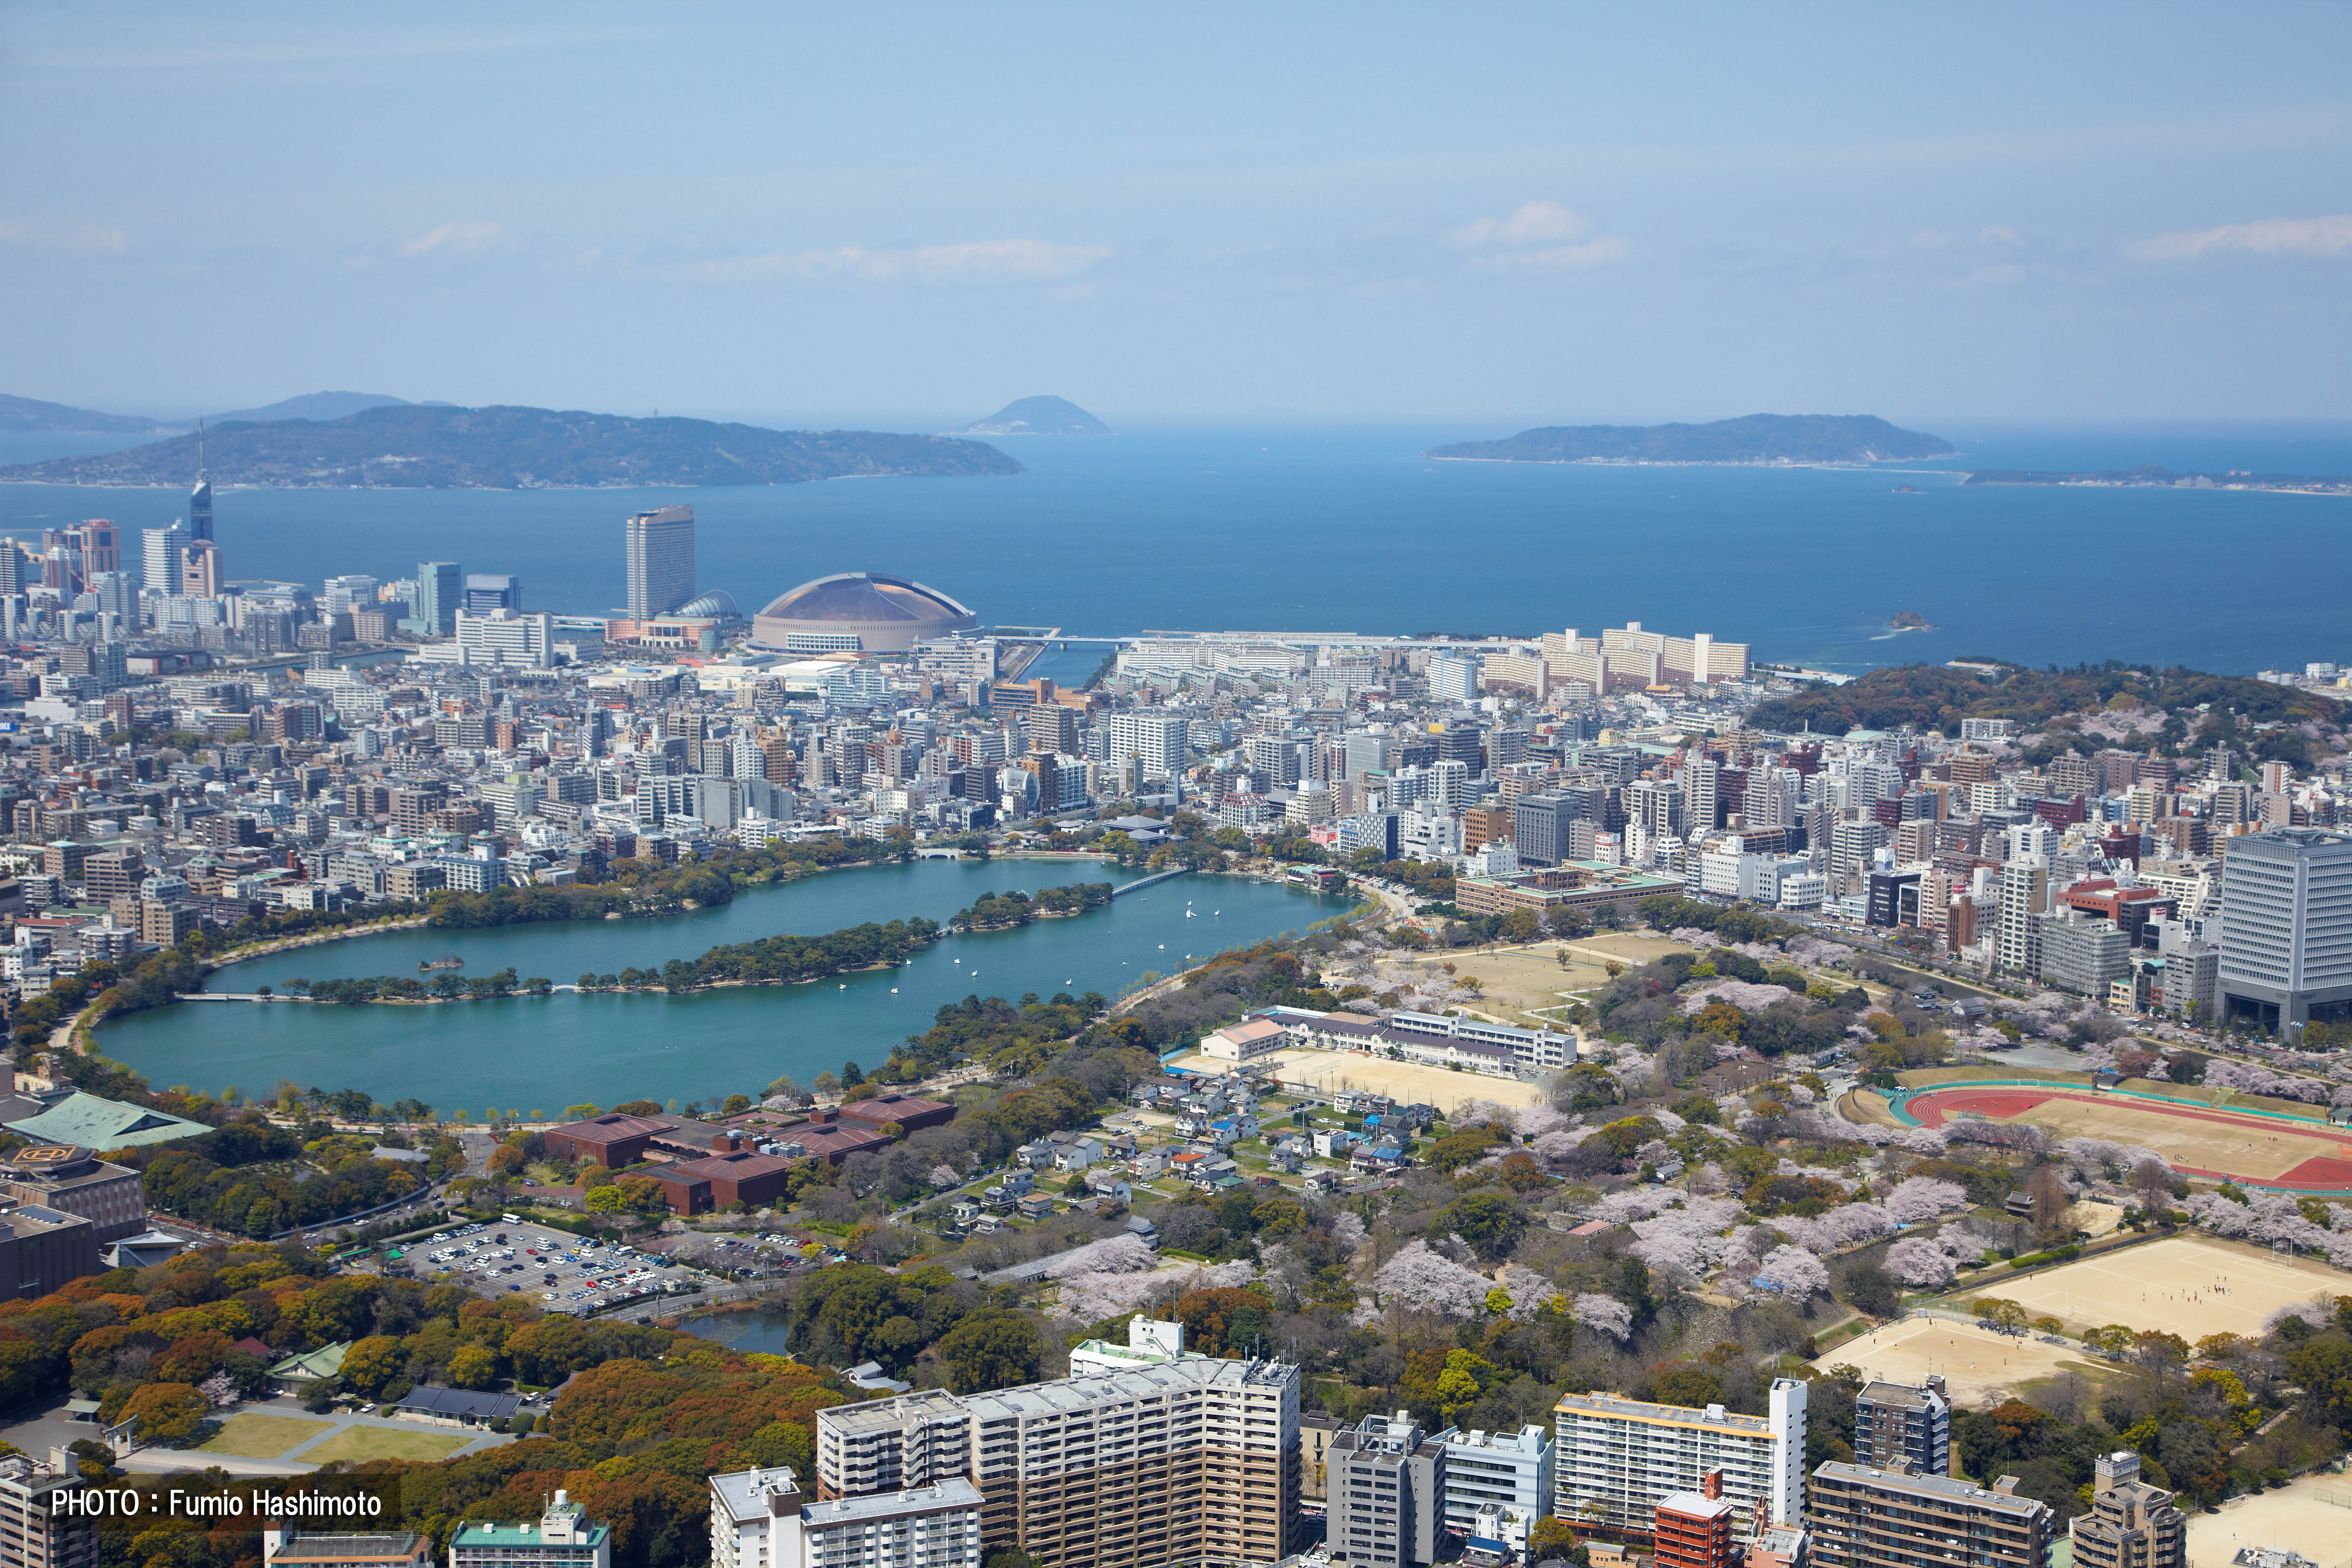 大濠公園上空から博多湾を望む(2009)の画像